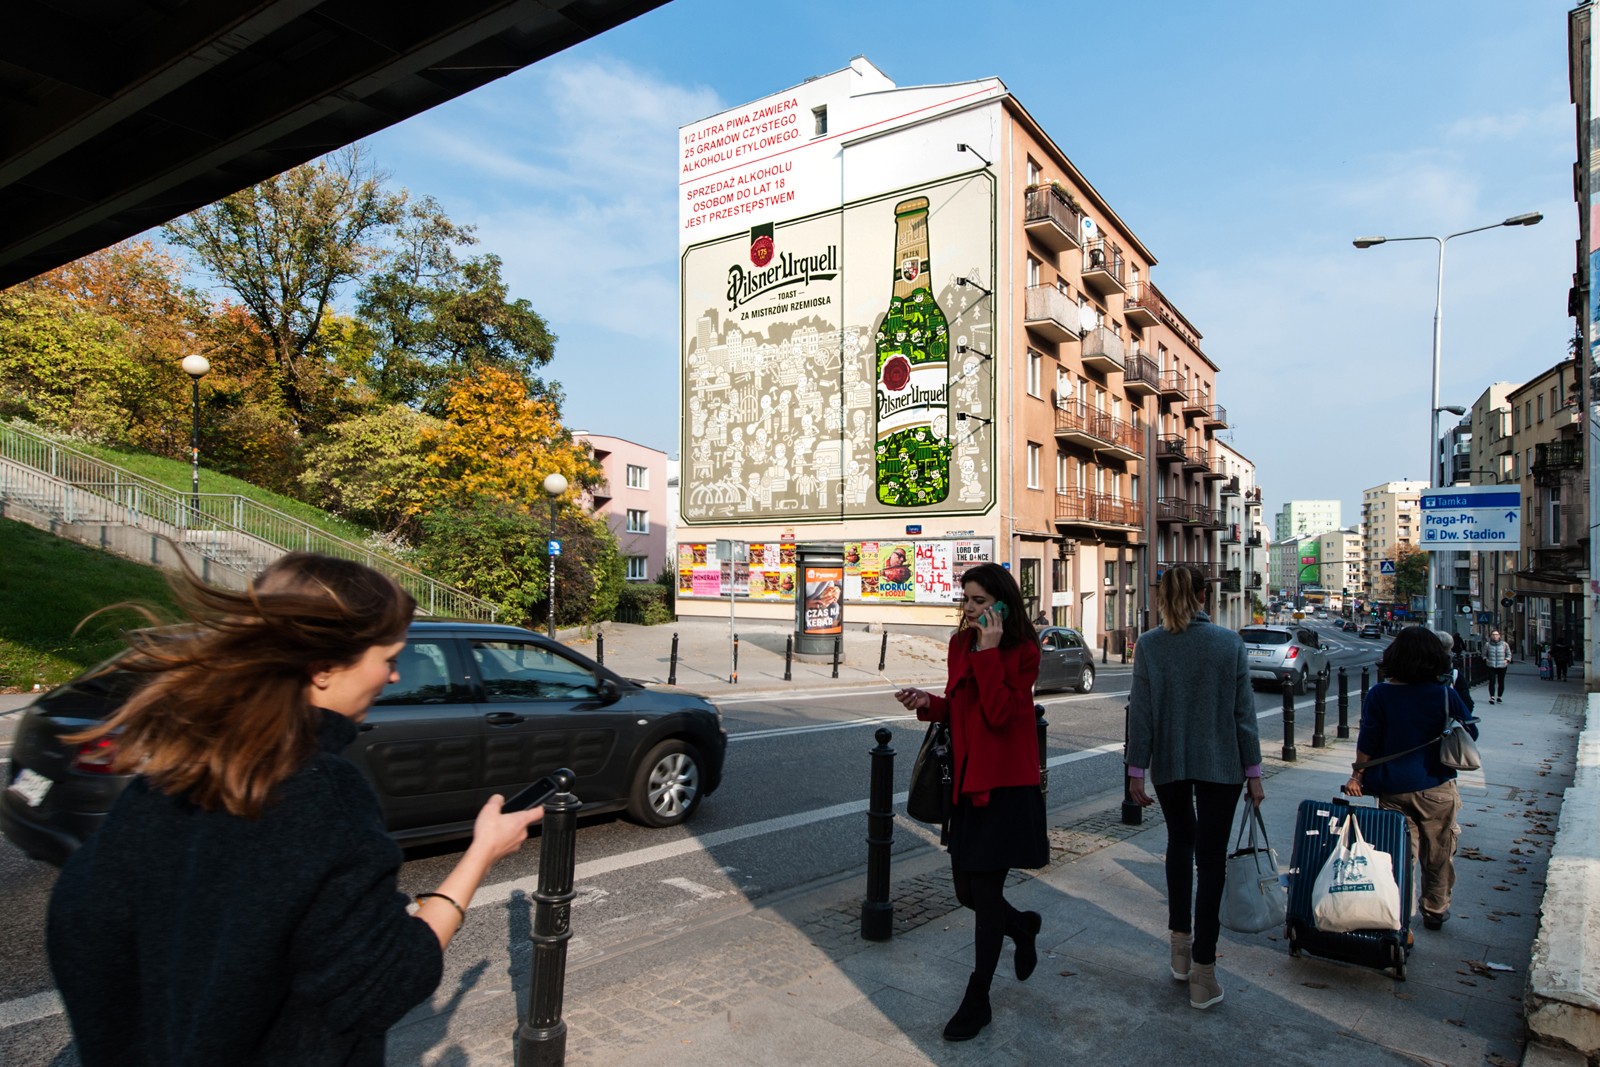 Ulica Tamka w Warszawie mural reklamowy Pilsner Urquell  | Pilsner Urquell | Portfolio